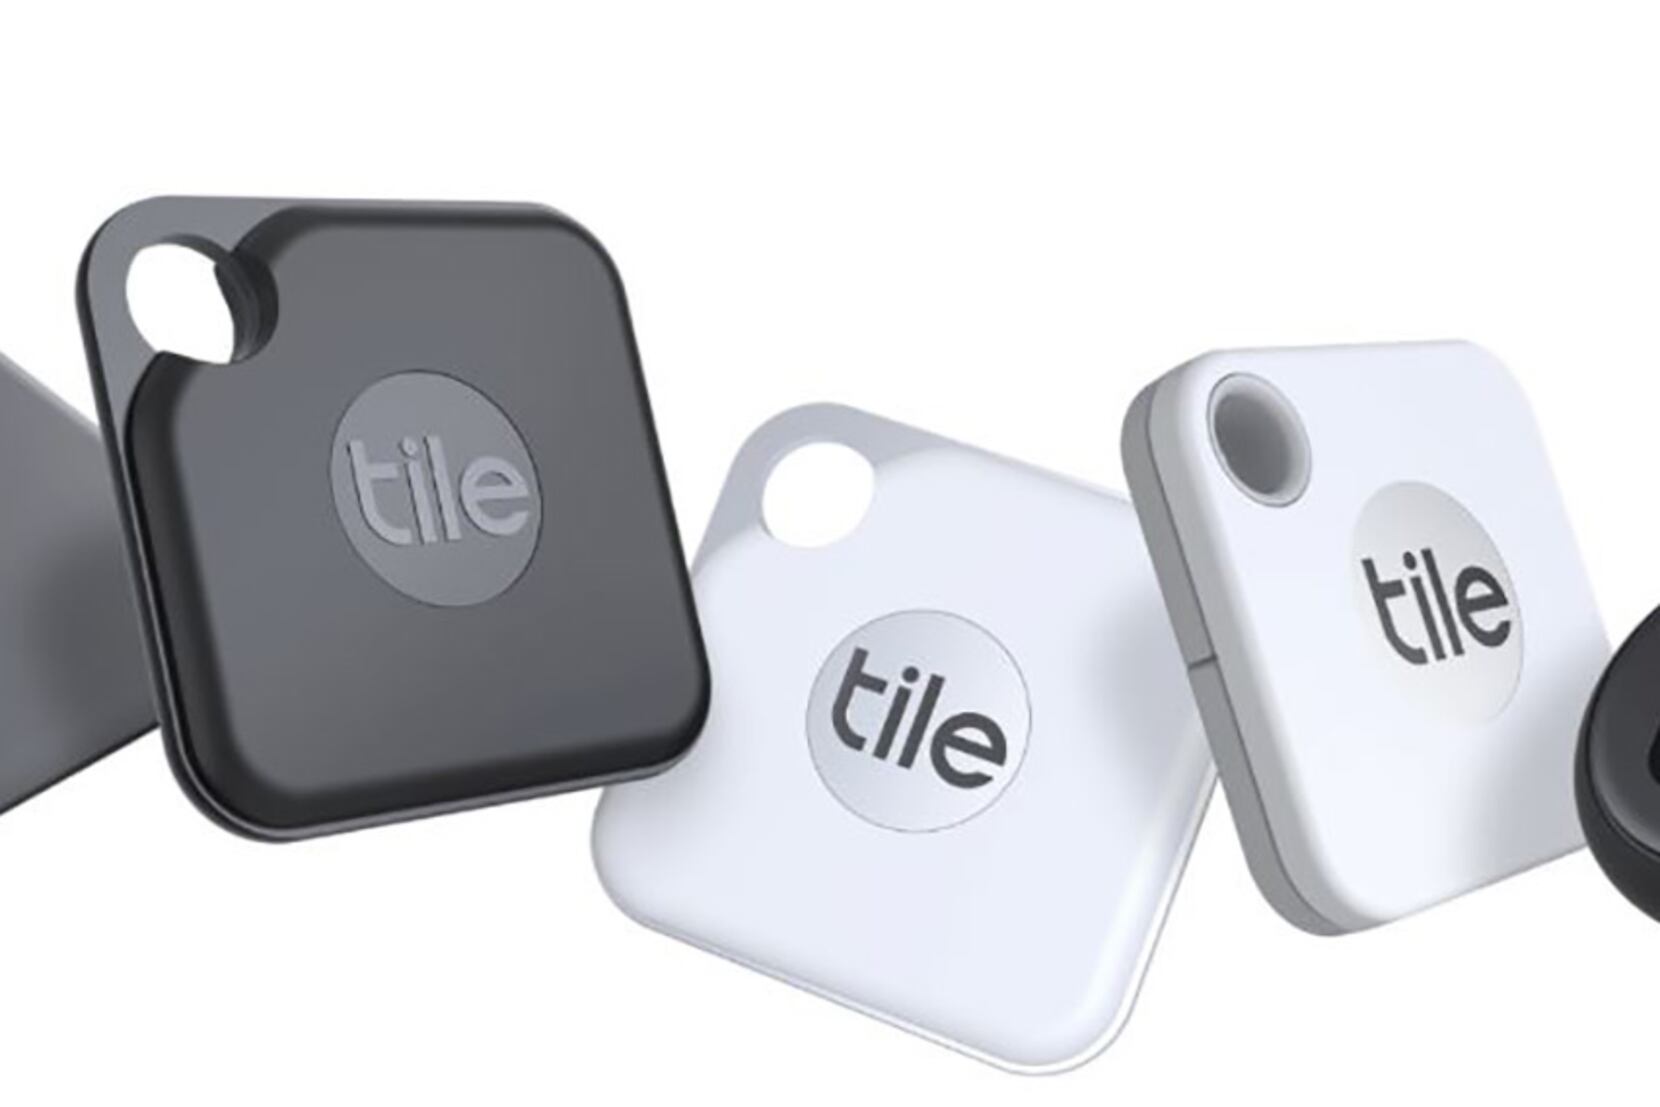 Tile Pro + Tile Slim 4-Pack